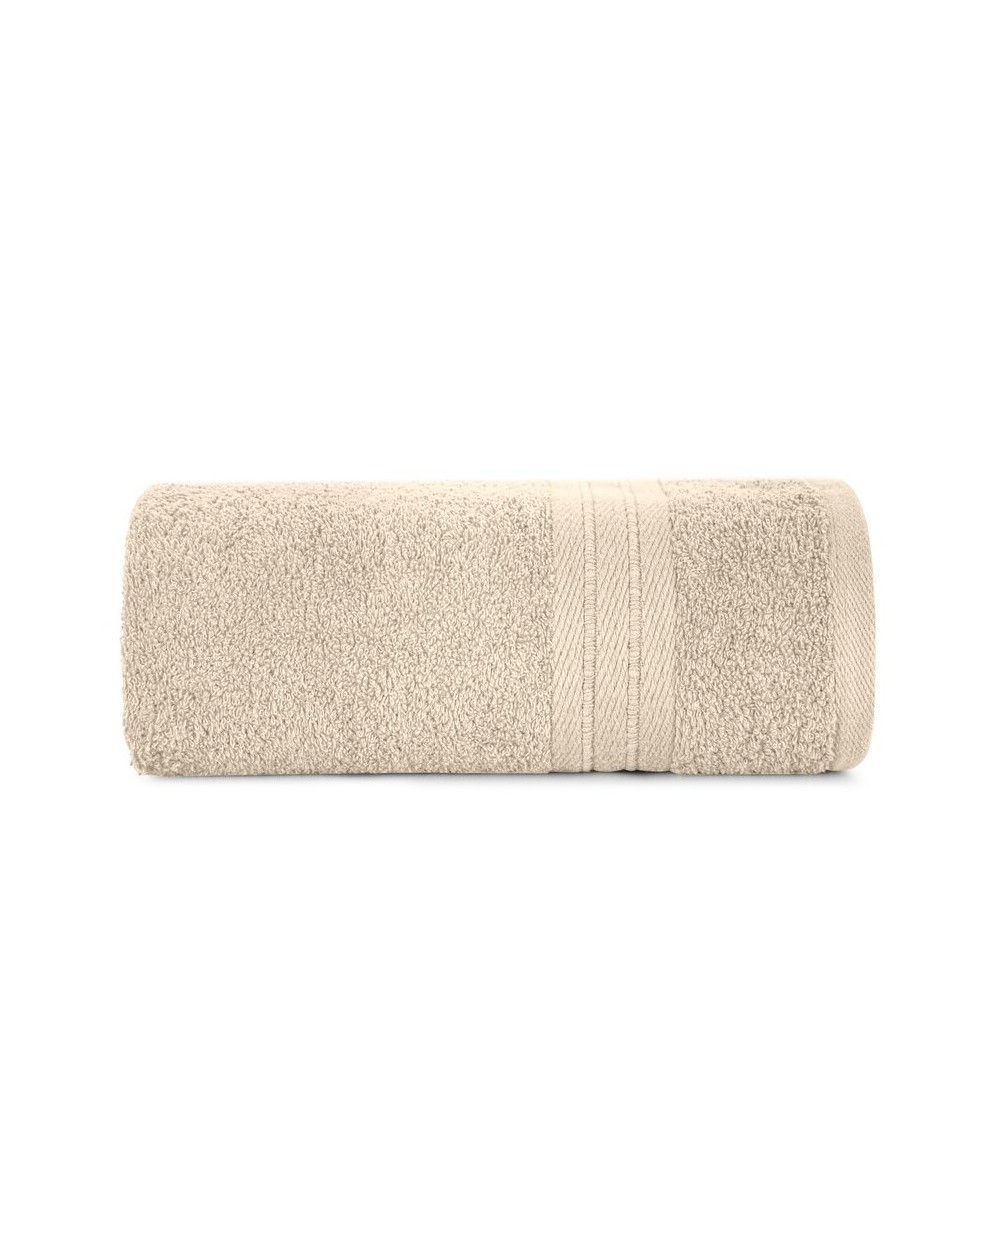 Ręcznik bawełna 50x90 Kaya beżowy Eurofirany